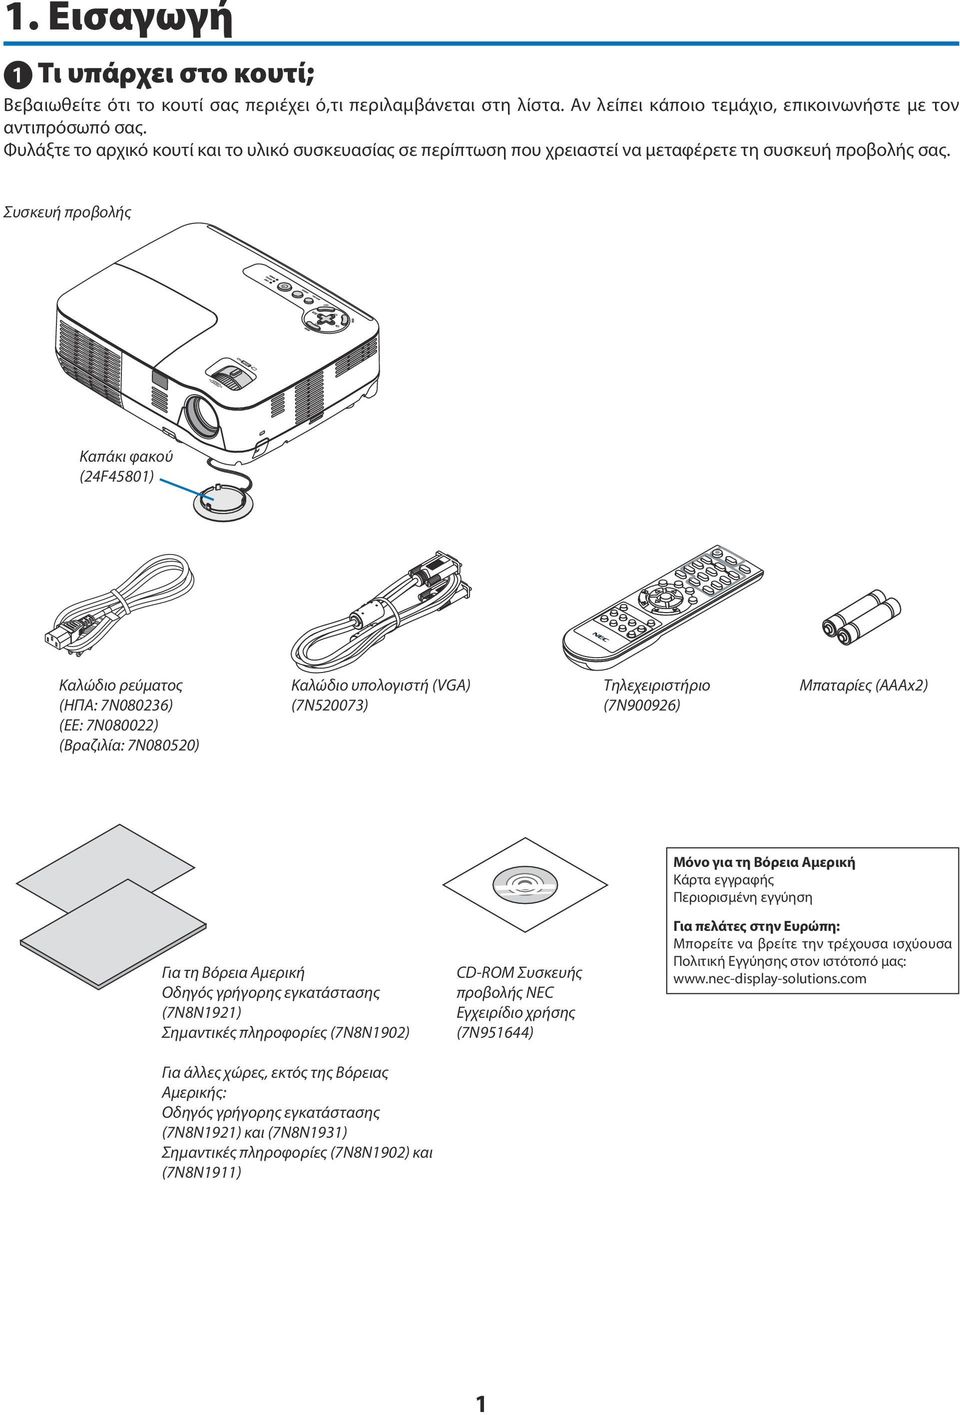 Συσκευή προβολής Καπάκι φακού (24F45801) Καλώδιο ρεύματος (ΗΠΑ: 7N080236) (ΕΕ: 7N080022) (Βραζιλία: 7N080520) Καλώδιο υπολογιστή (VGA) (7N520073) Τηλεχειριστήριο (7N900926) Μπαταρίες (AAAx2) Για τη